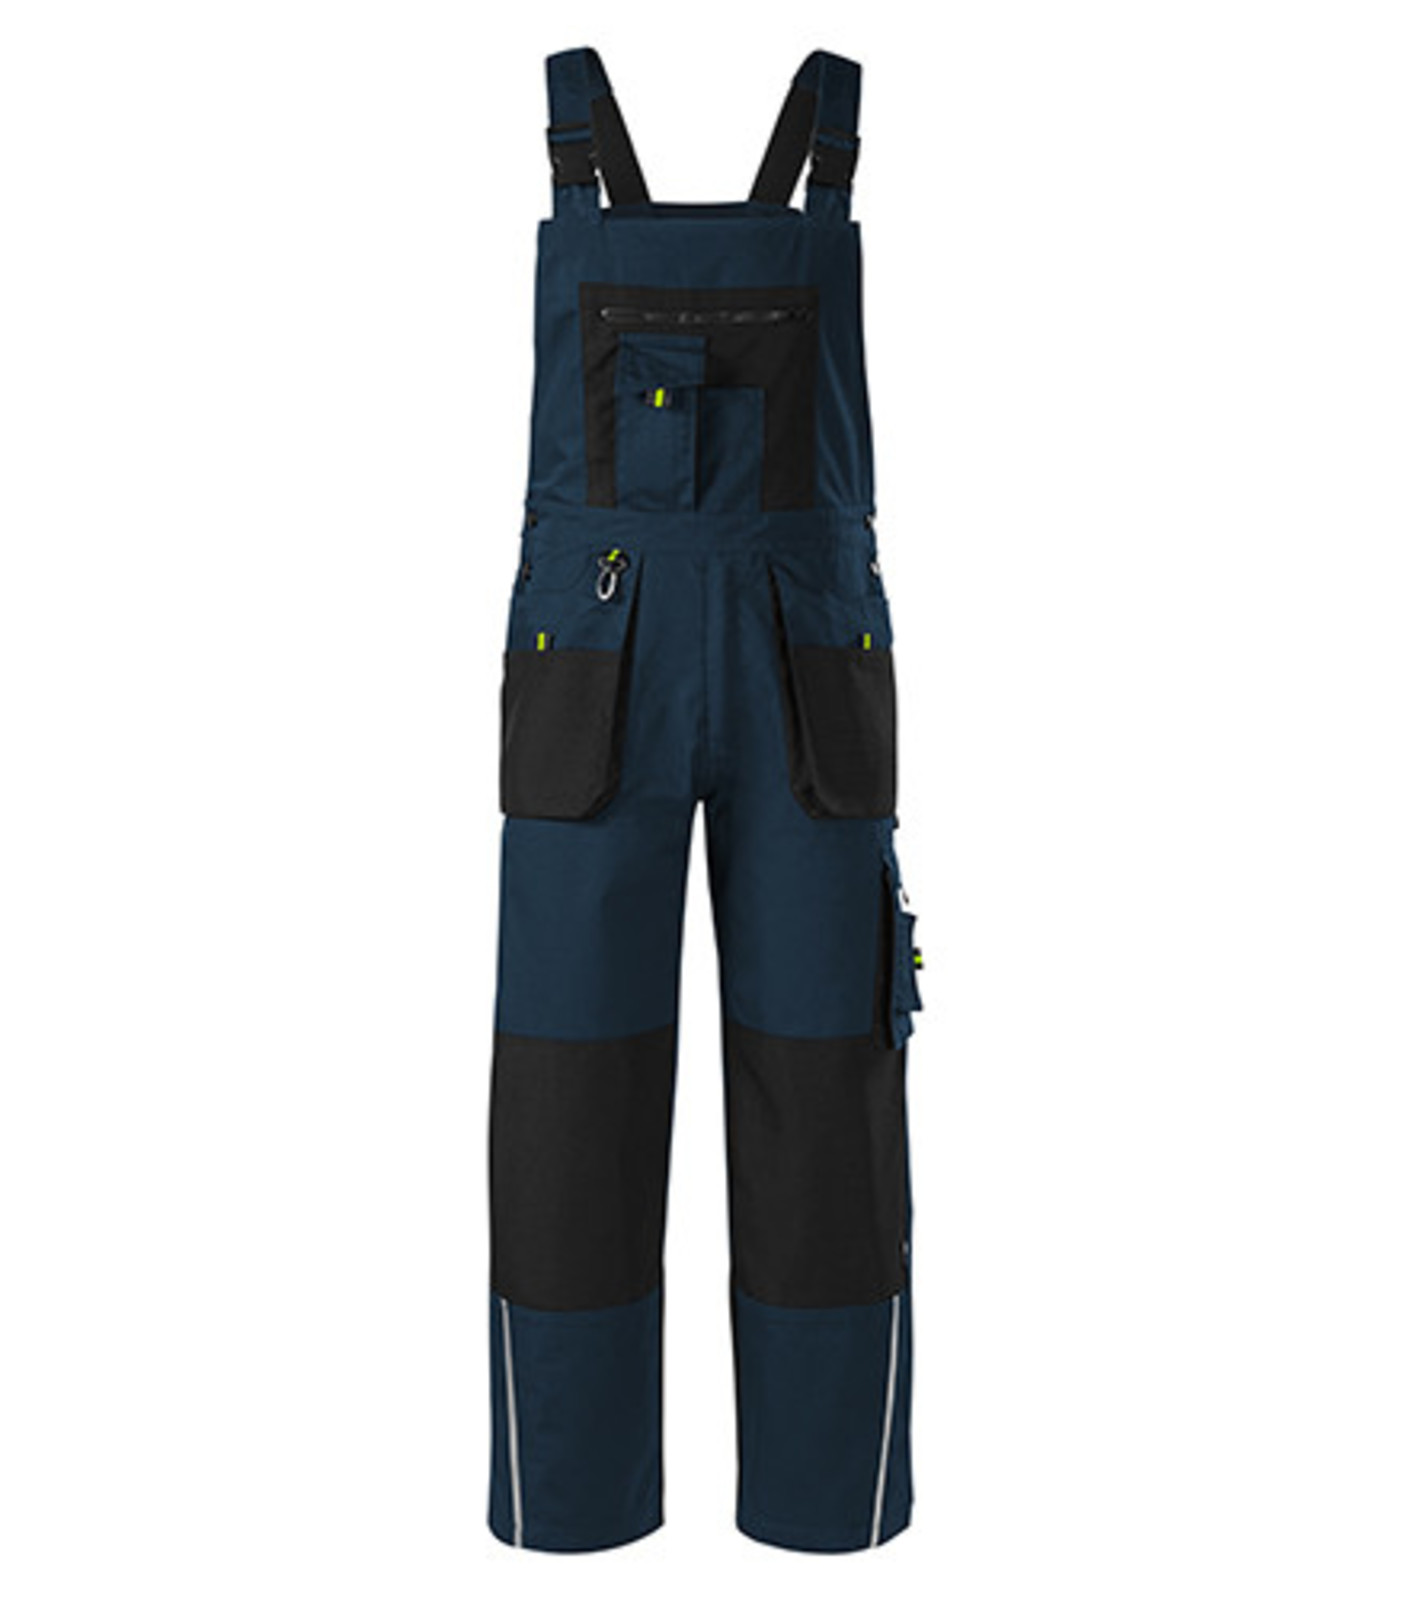 Montérkové nohavice s náprsenkou Adler Ranger W04 - veľkosť: 60-62, farba: tmavo modrá